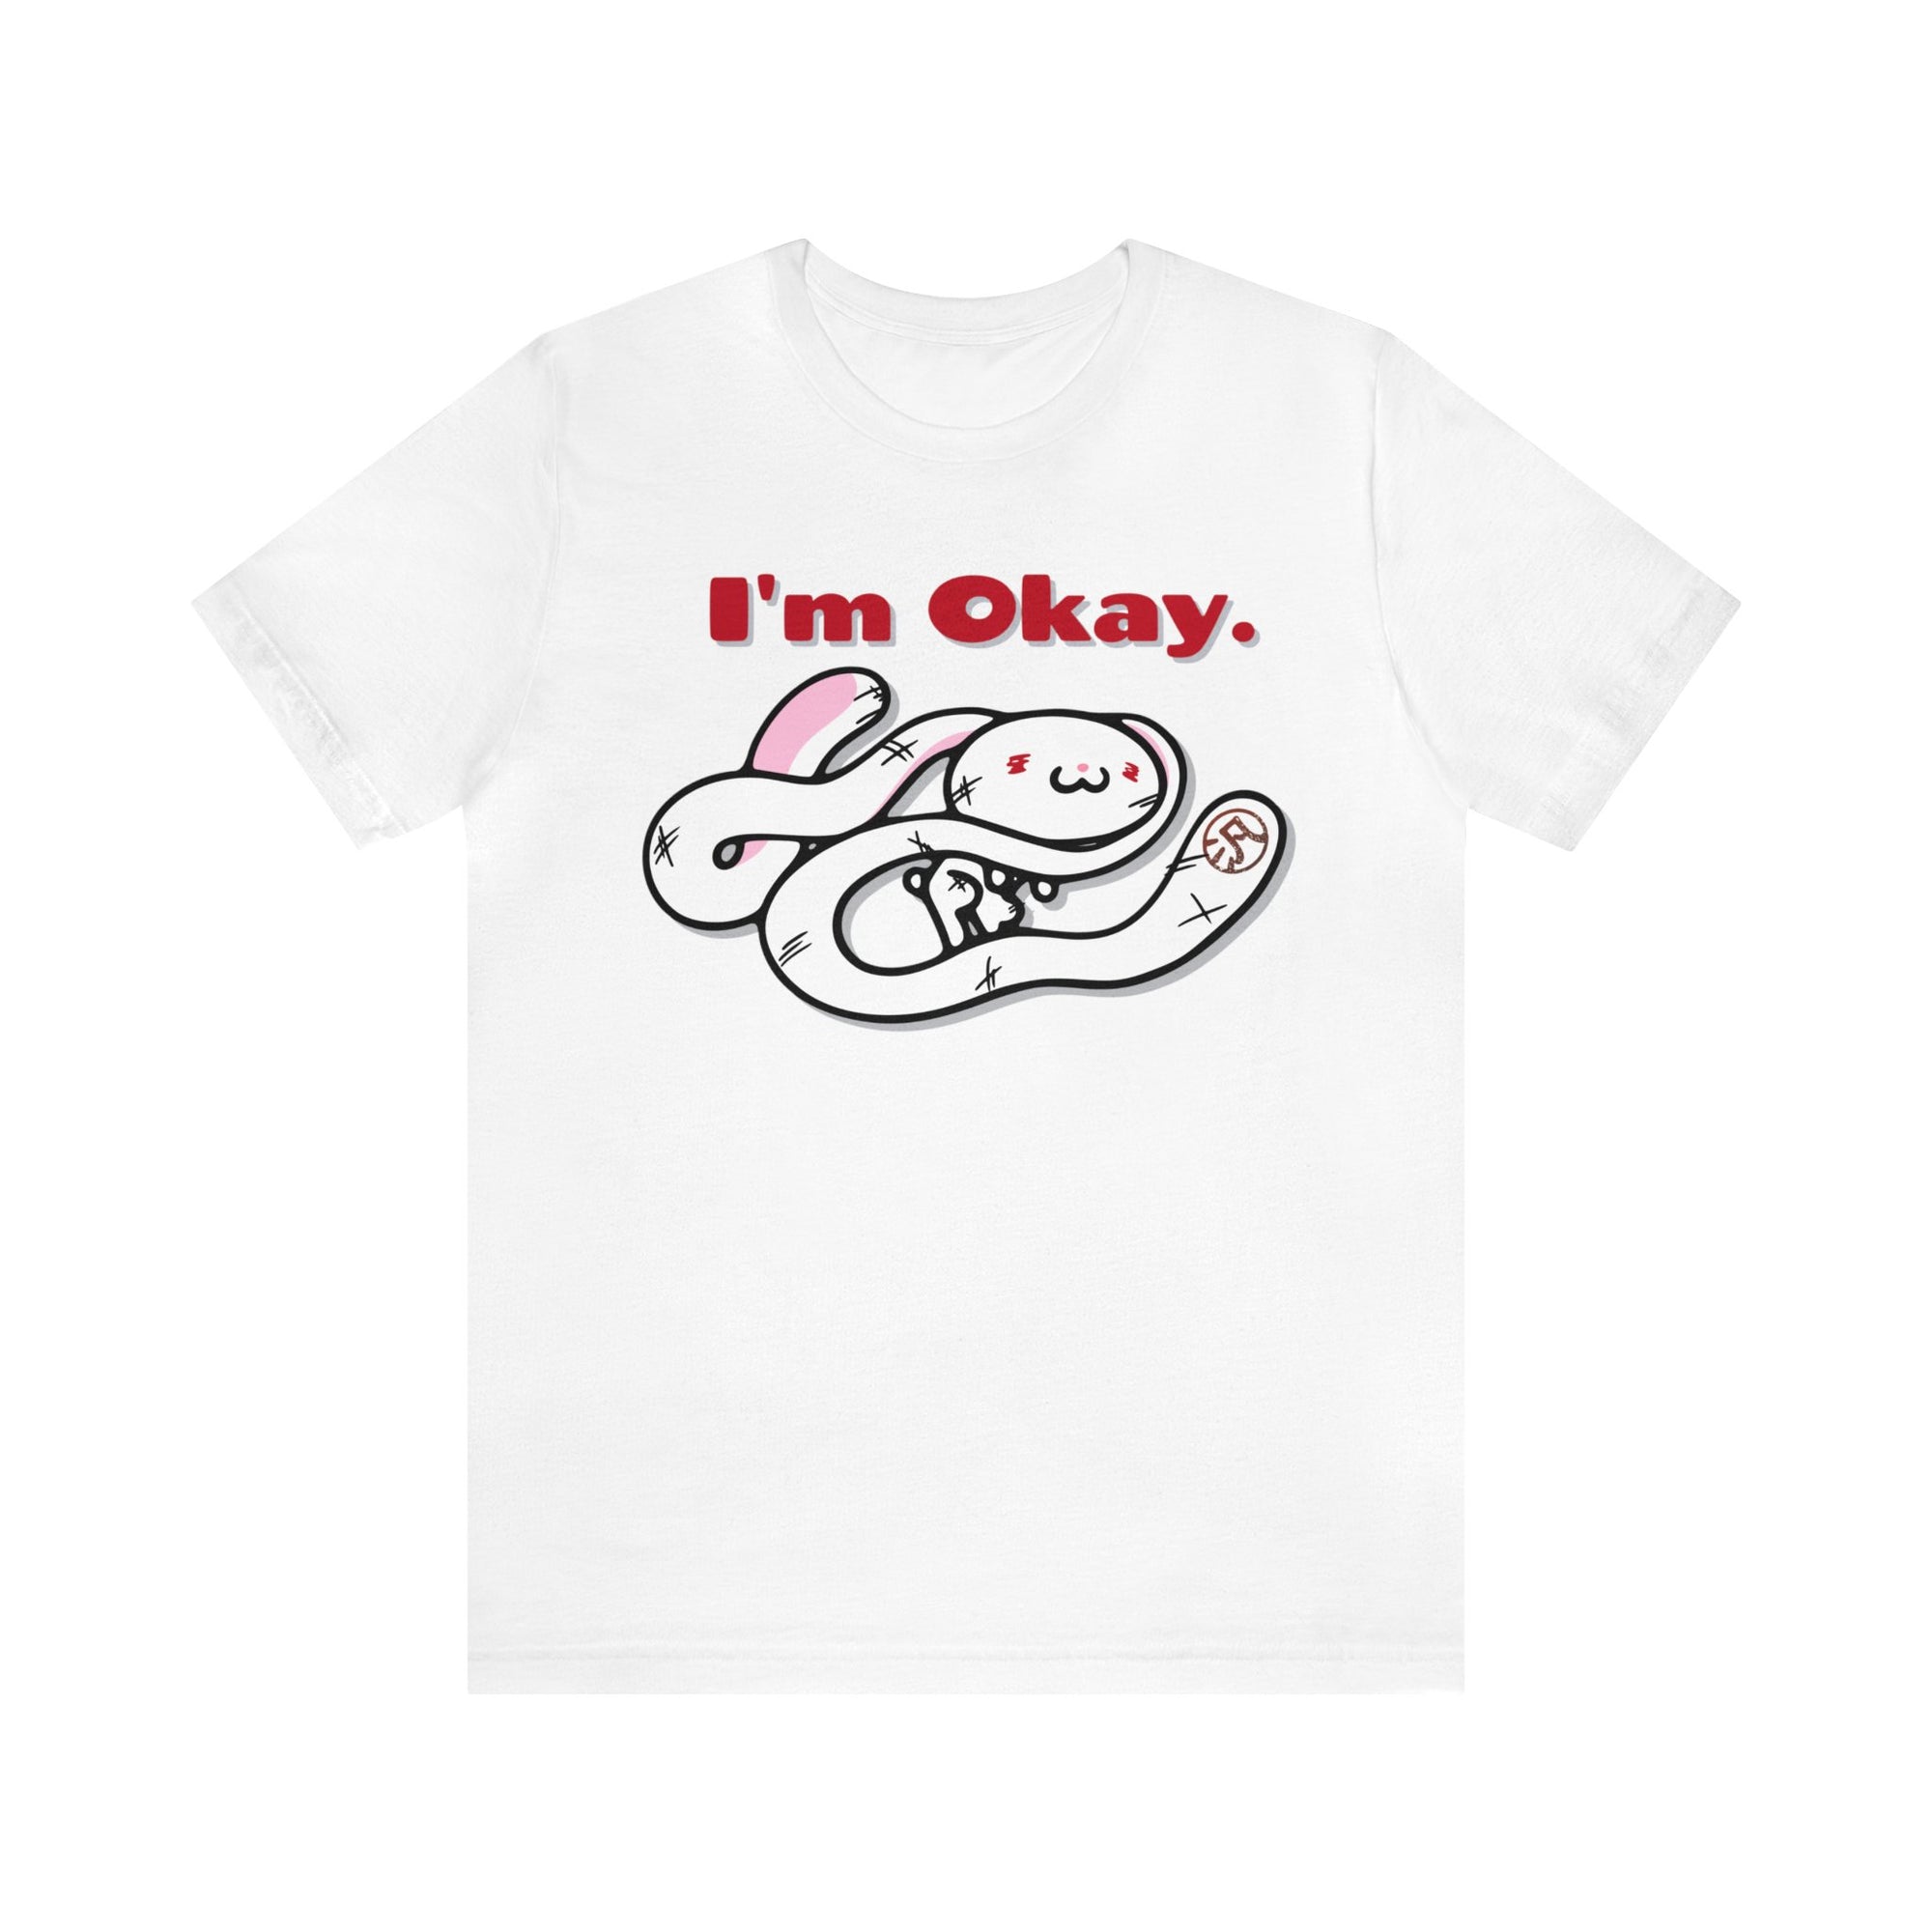 "I'm Okay" All Purpose Bunny Unisex Tee